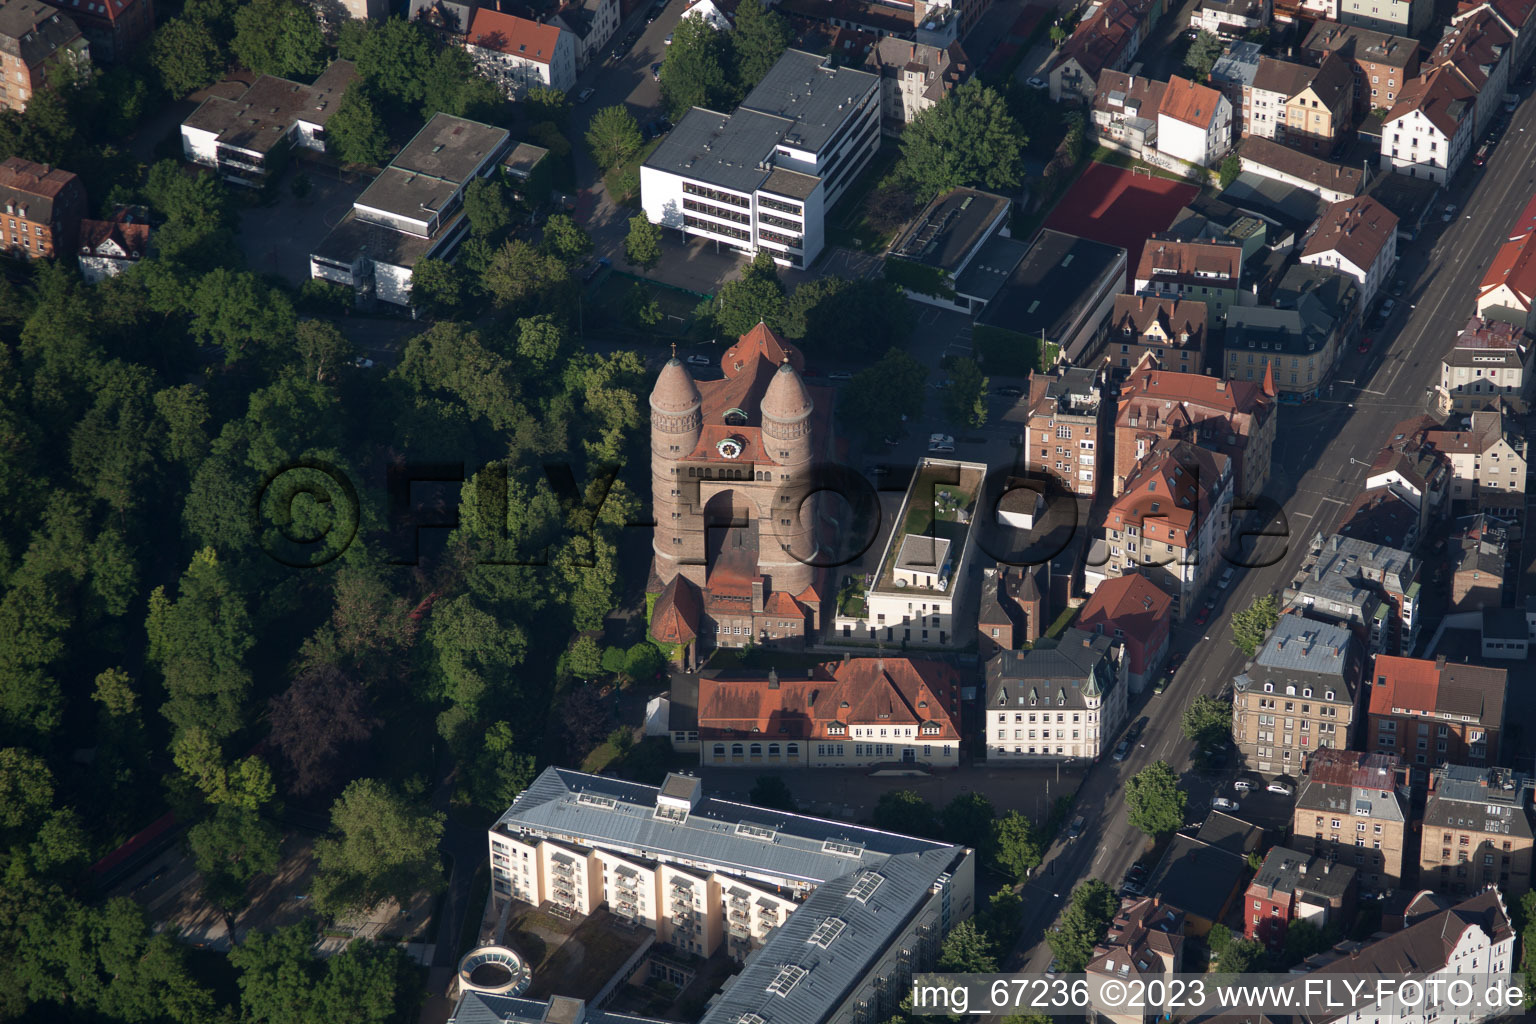 Ulm im Bundesland Baden-Württemberg, Deutschland aus der Luft betrachtet